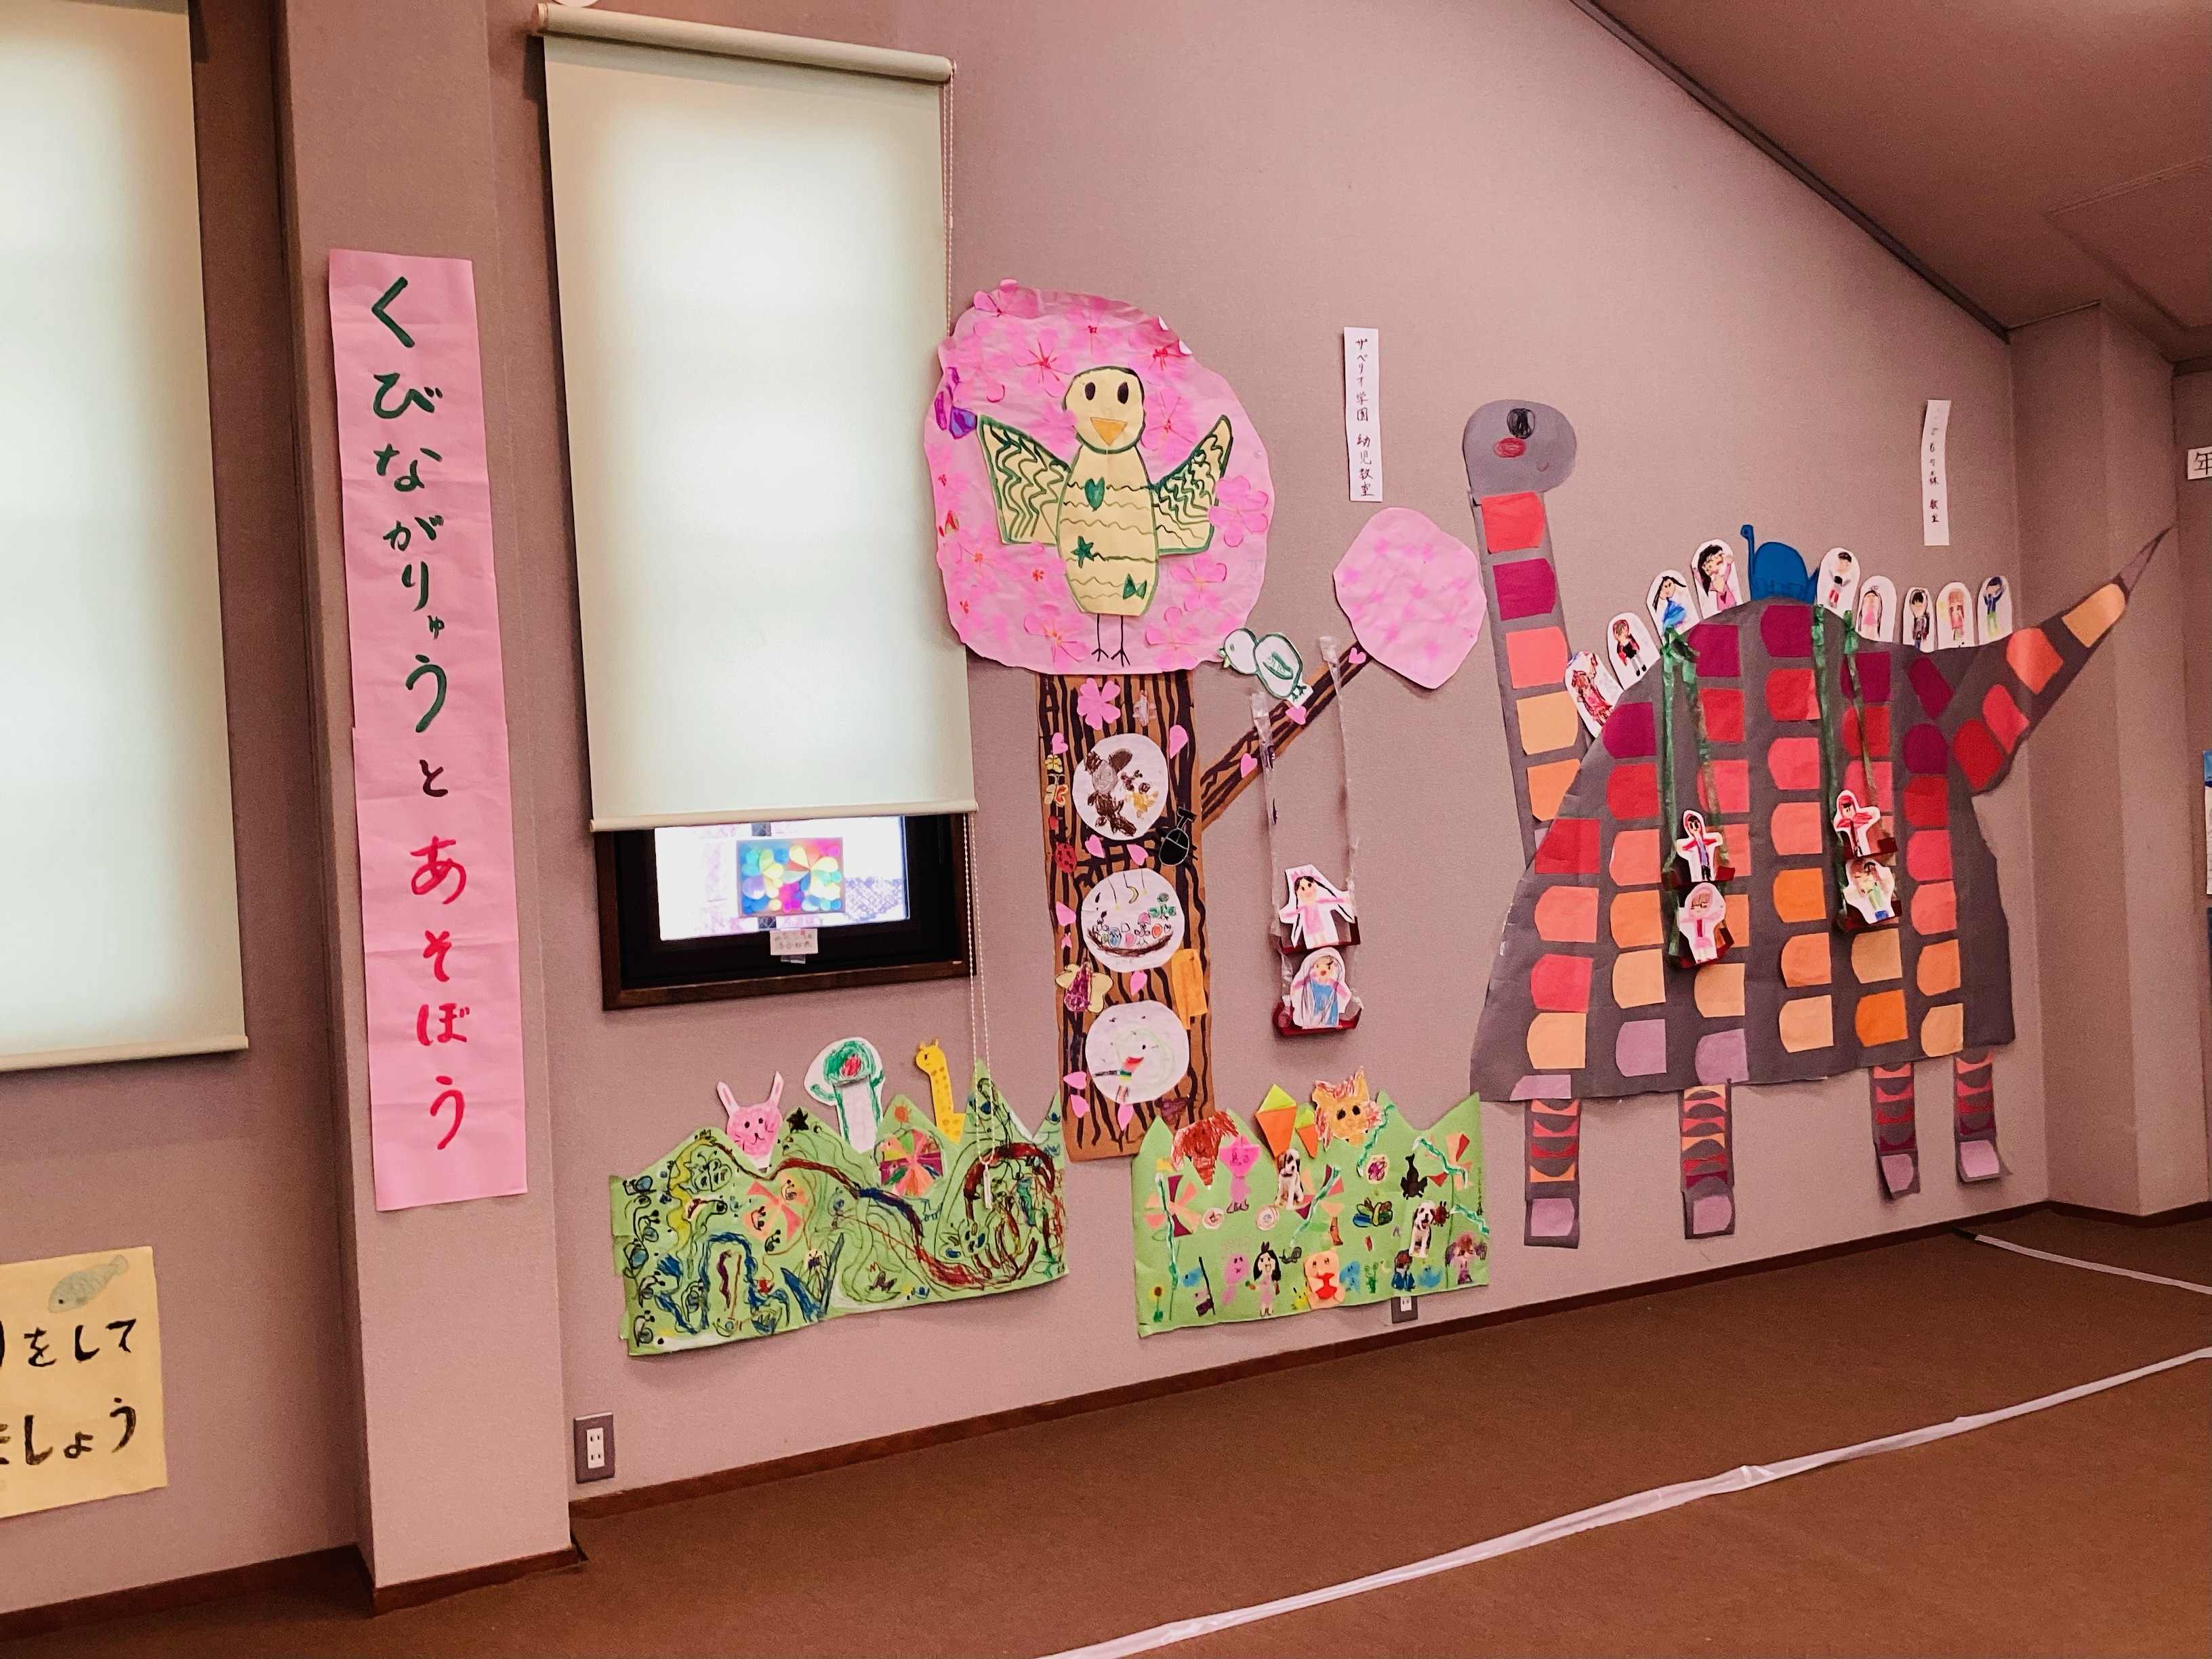 『第 45回若松絵画造形教室合同展覧会』が開催されます📢